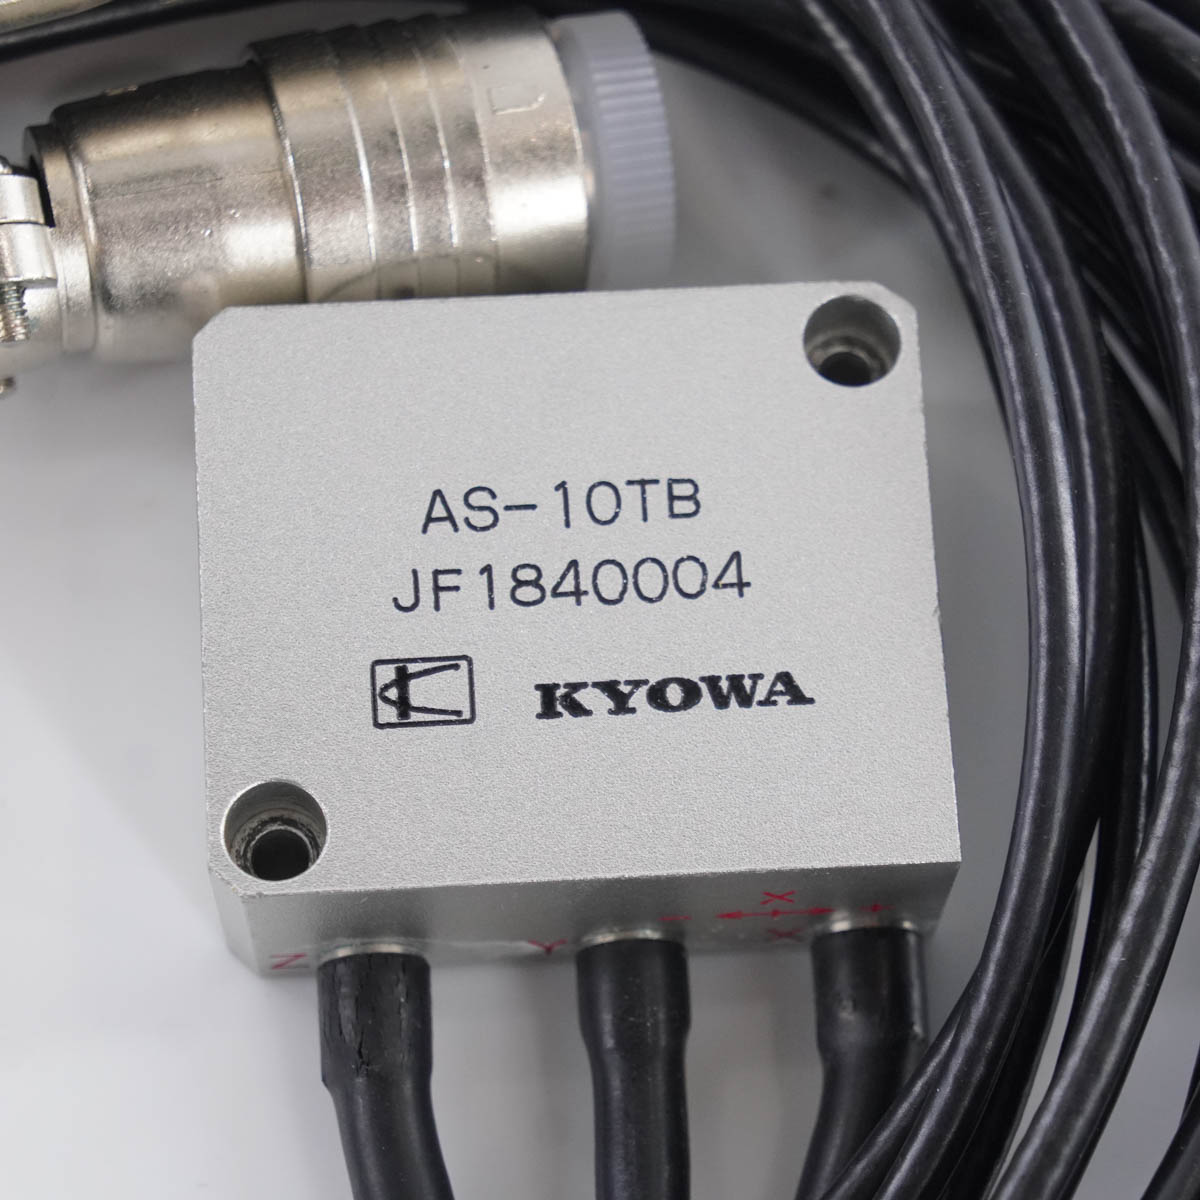 セット KYOWA AS-20GB AS-10TB 加速度変換器 加速度センサー 取扱説明